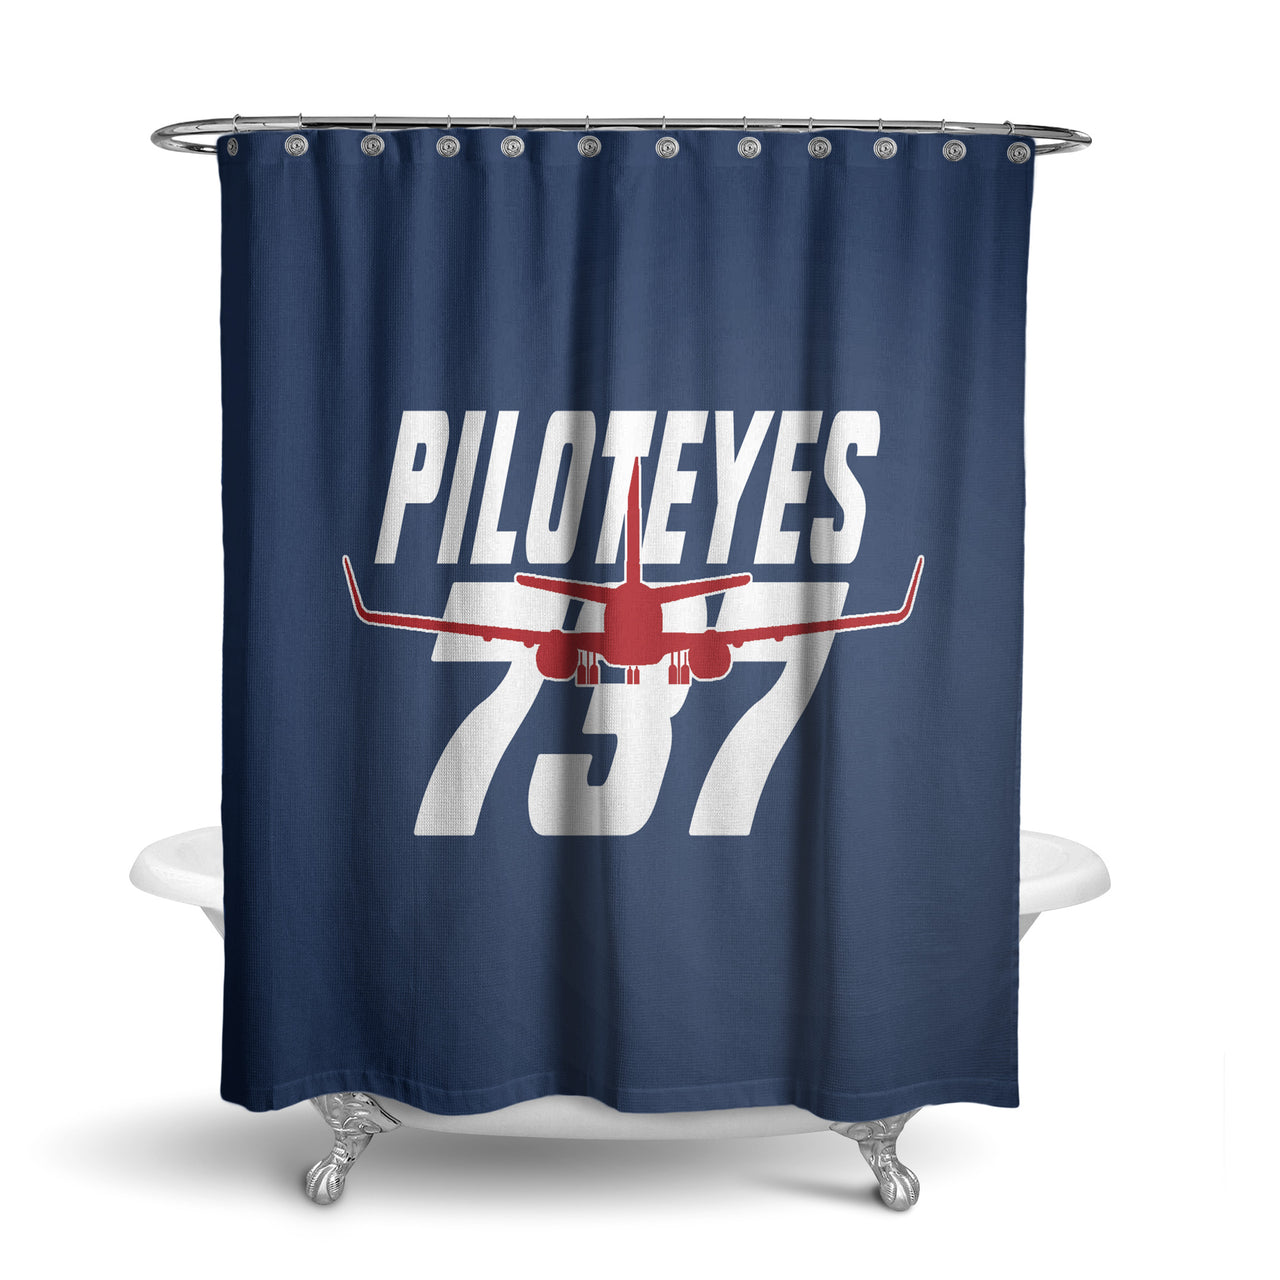 Amazing Piloteyes737 Designed Shower Curtains